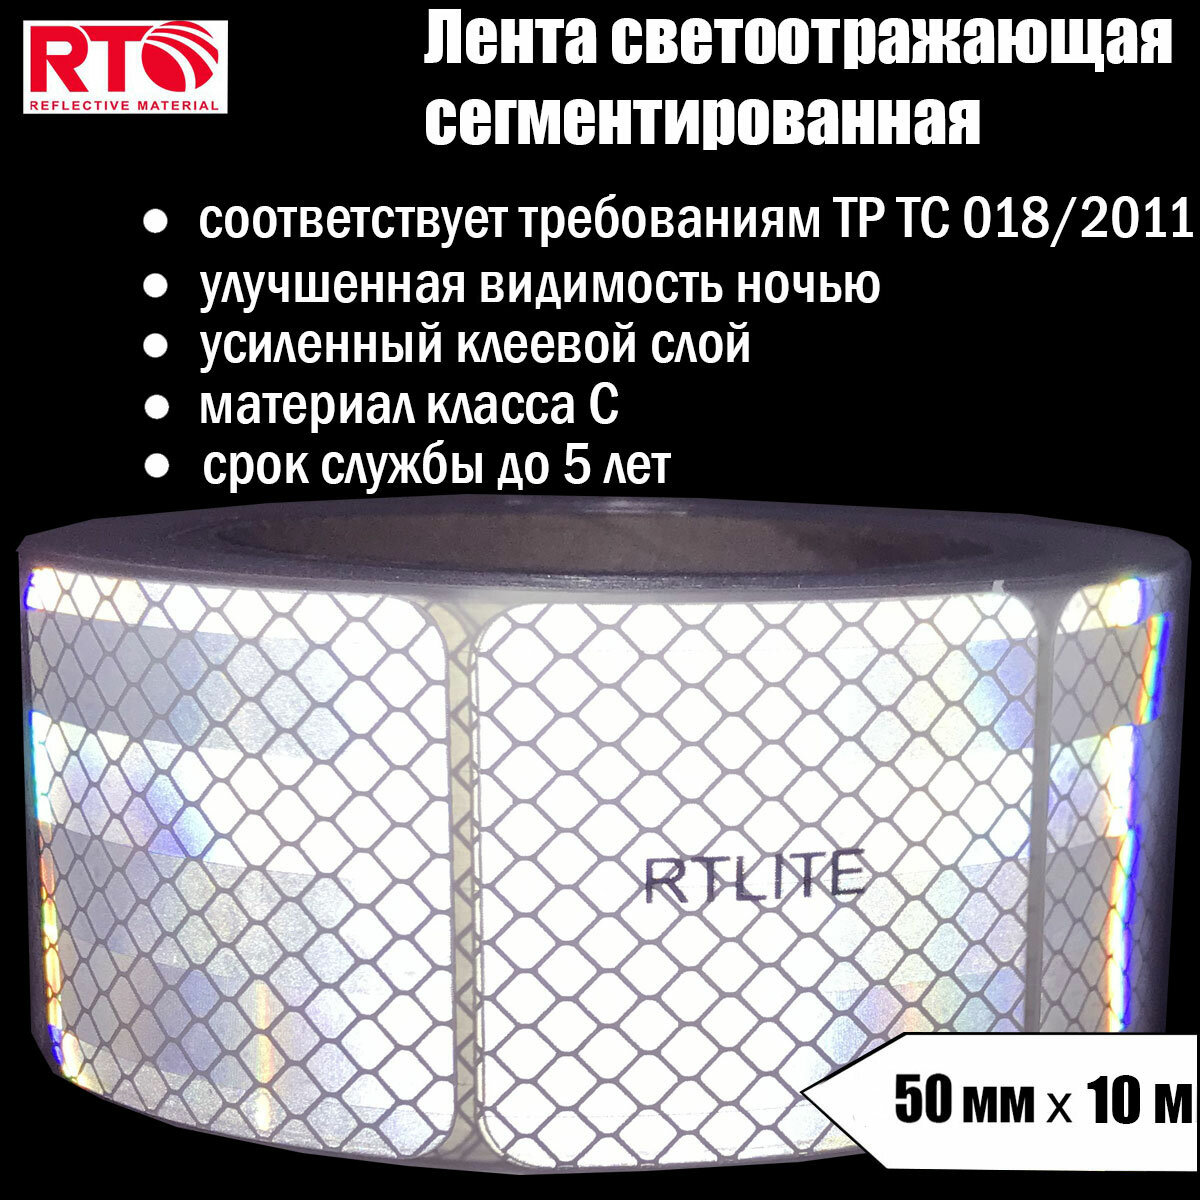 Лента светоотражающая сегментированная RTLITE RT-V104 для контурной маркировки 50 мм х 10 м, белая